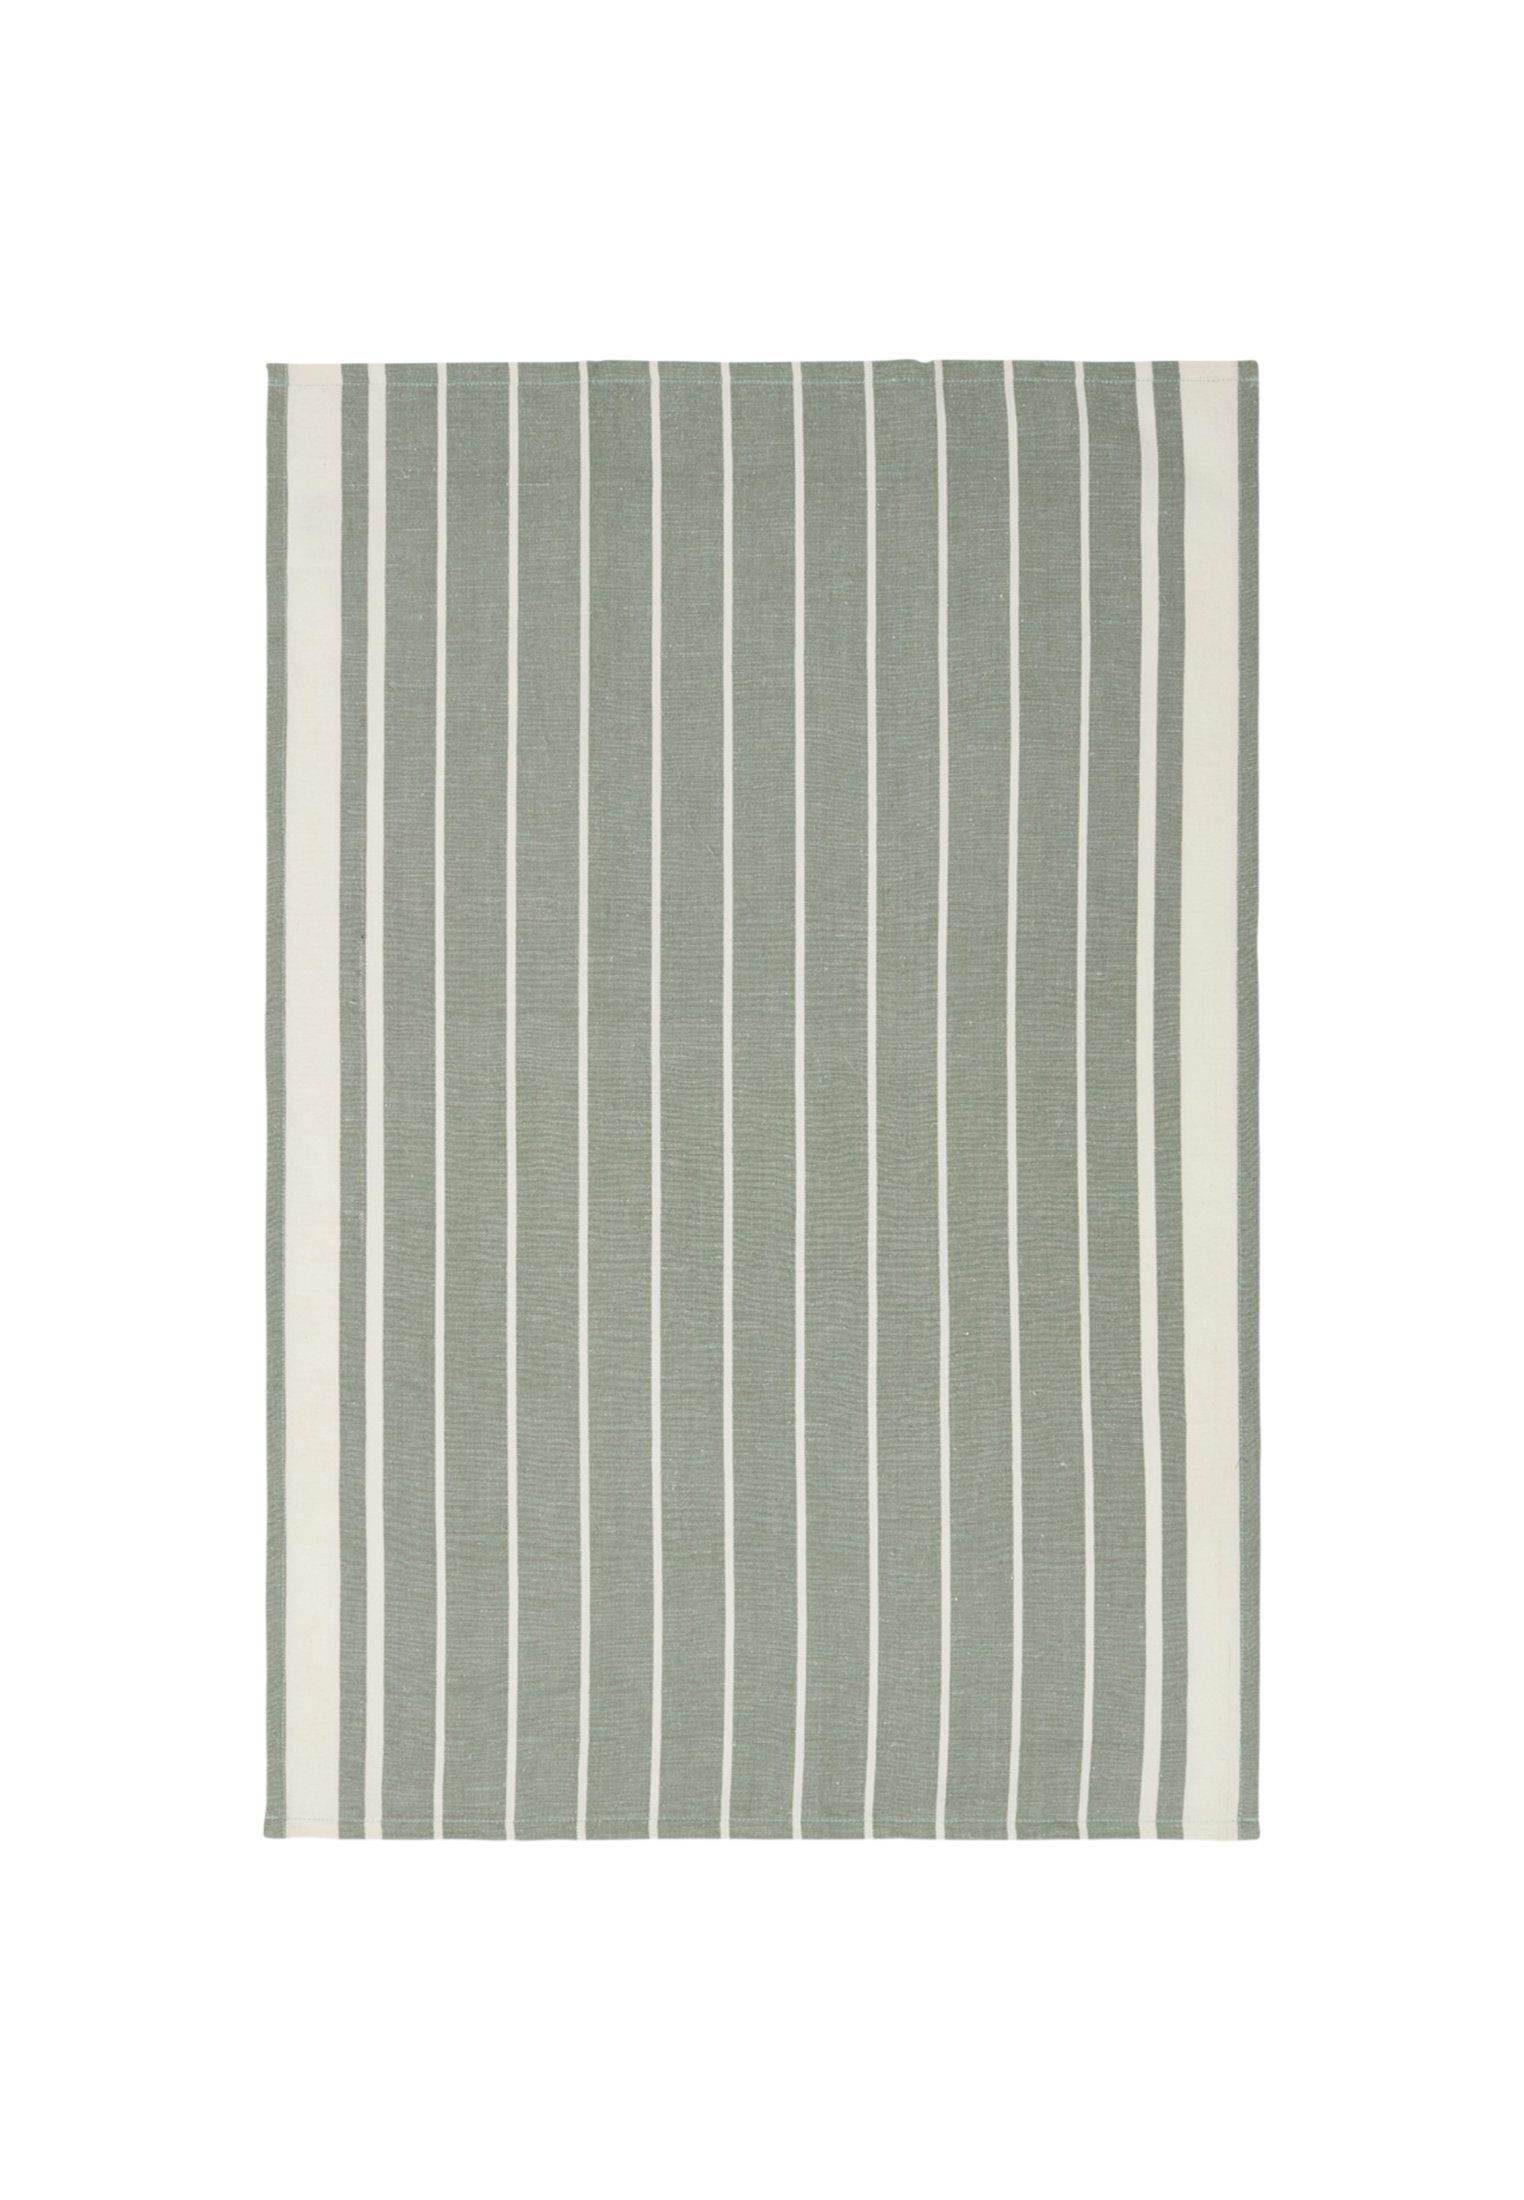 Lexington Striped Kitchen Linen/Cotton Geschirrtuch Towel